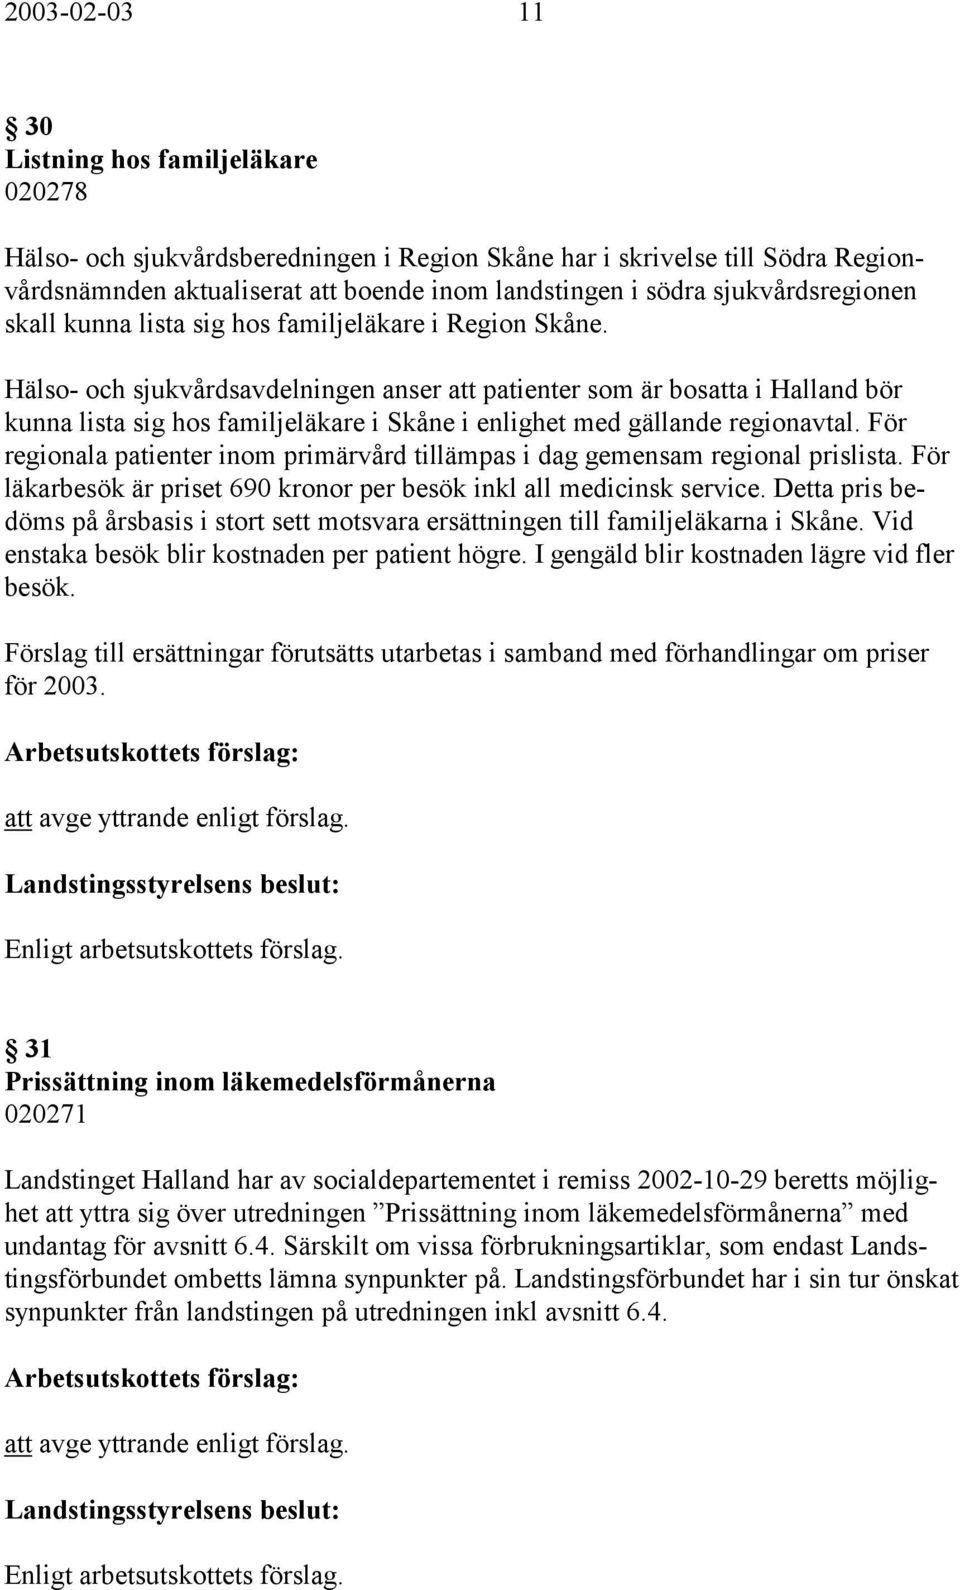 Hälso- och sjukvårdsavdelningen anser att patienter som är bosatta i Halland bör kunna lista sig hos familjeläkare i Skåne i enlighet med gällande regionavtal.